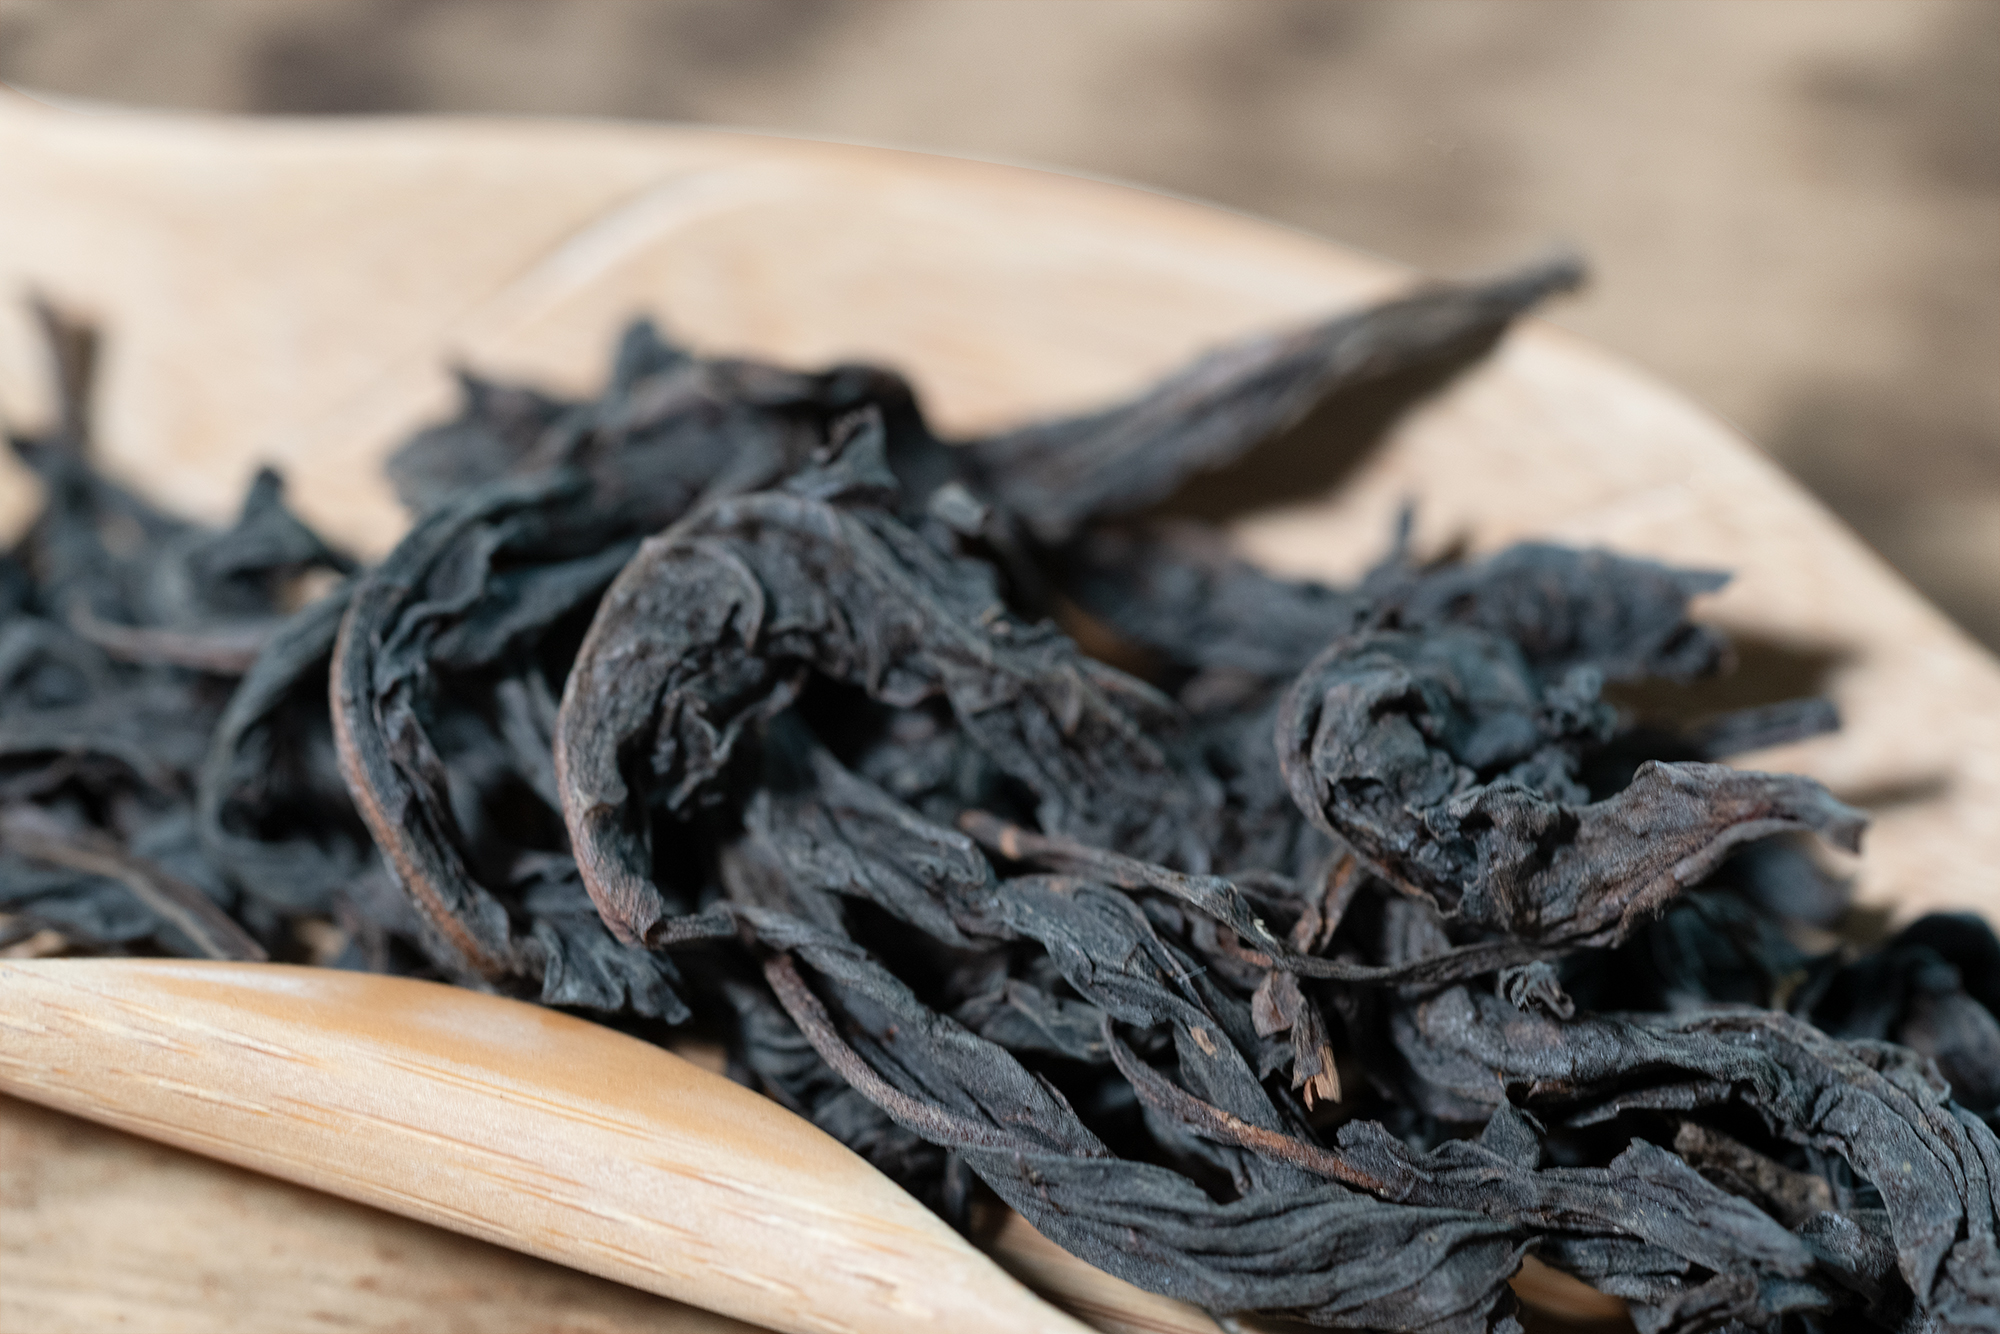 小喜年-有研究表明岩茶的保质期可标“长期保存”，对此你怎么看？